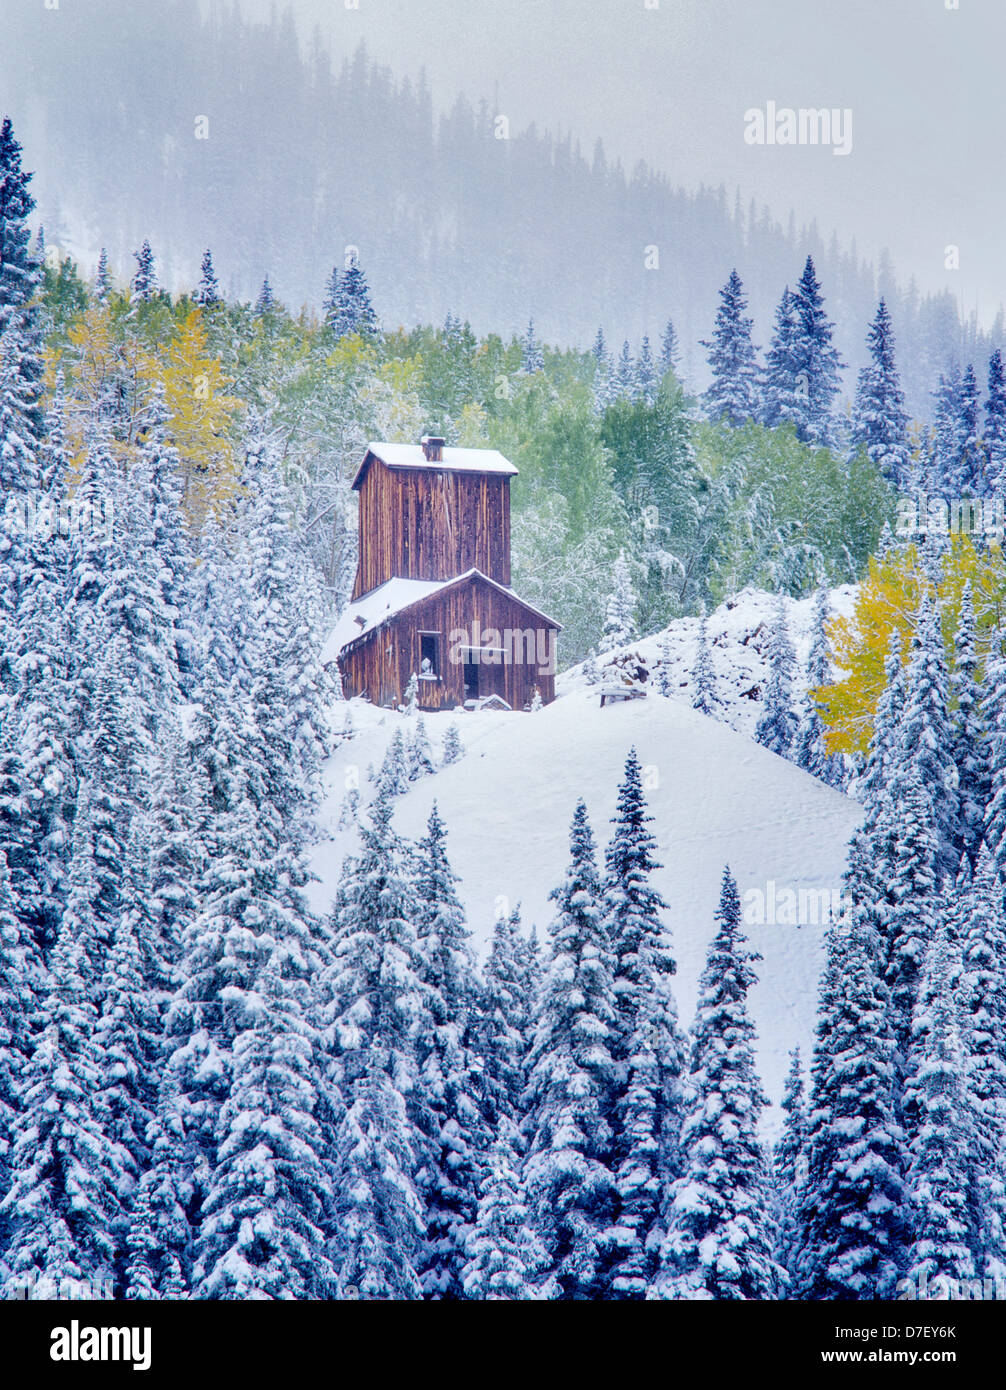 Struttura di data mining con nuova nevicata e caduta aspens colorati. Uncompahgre National Forest, Colorado Foto Stock